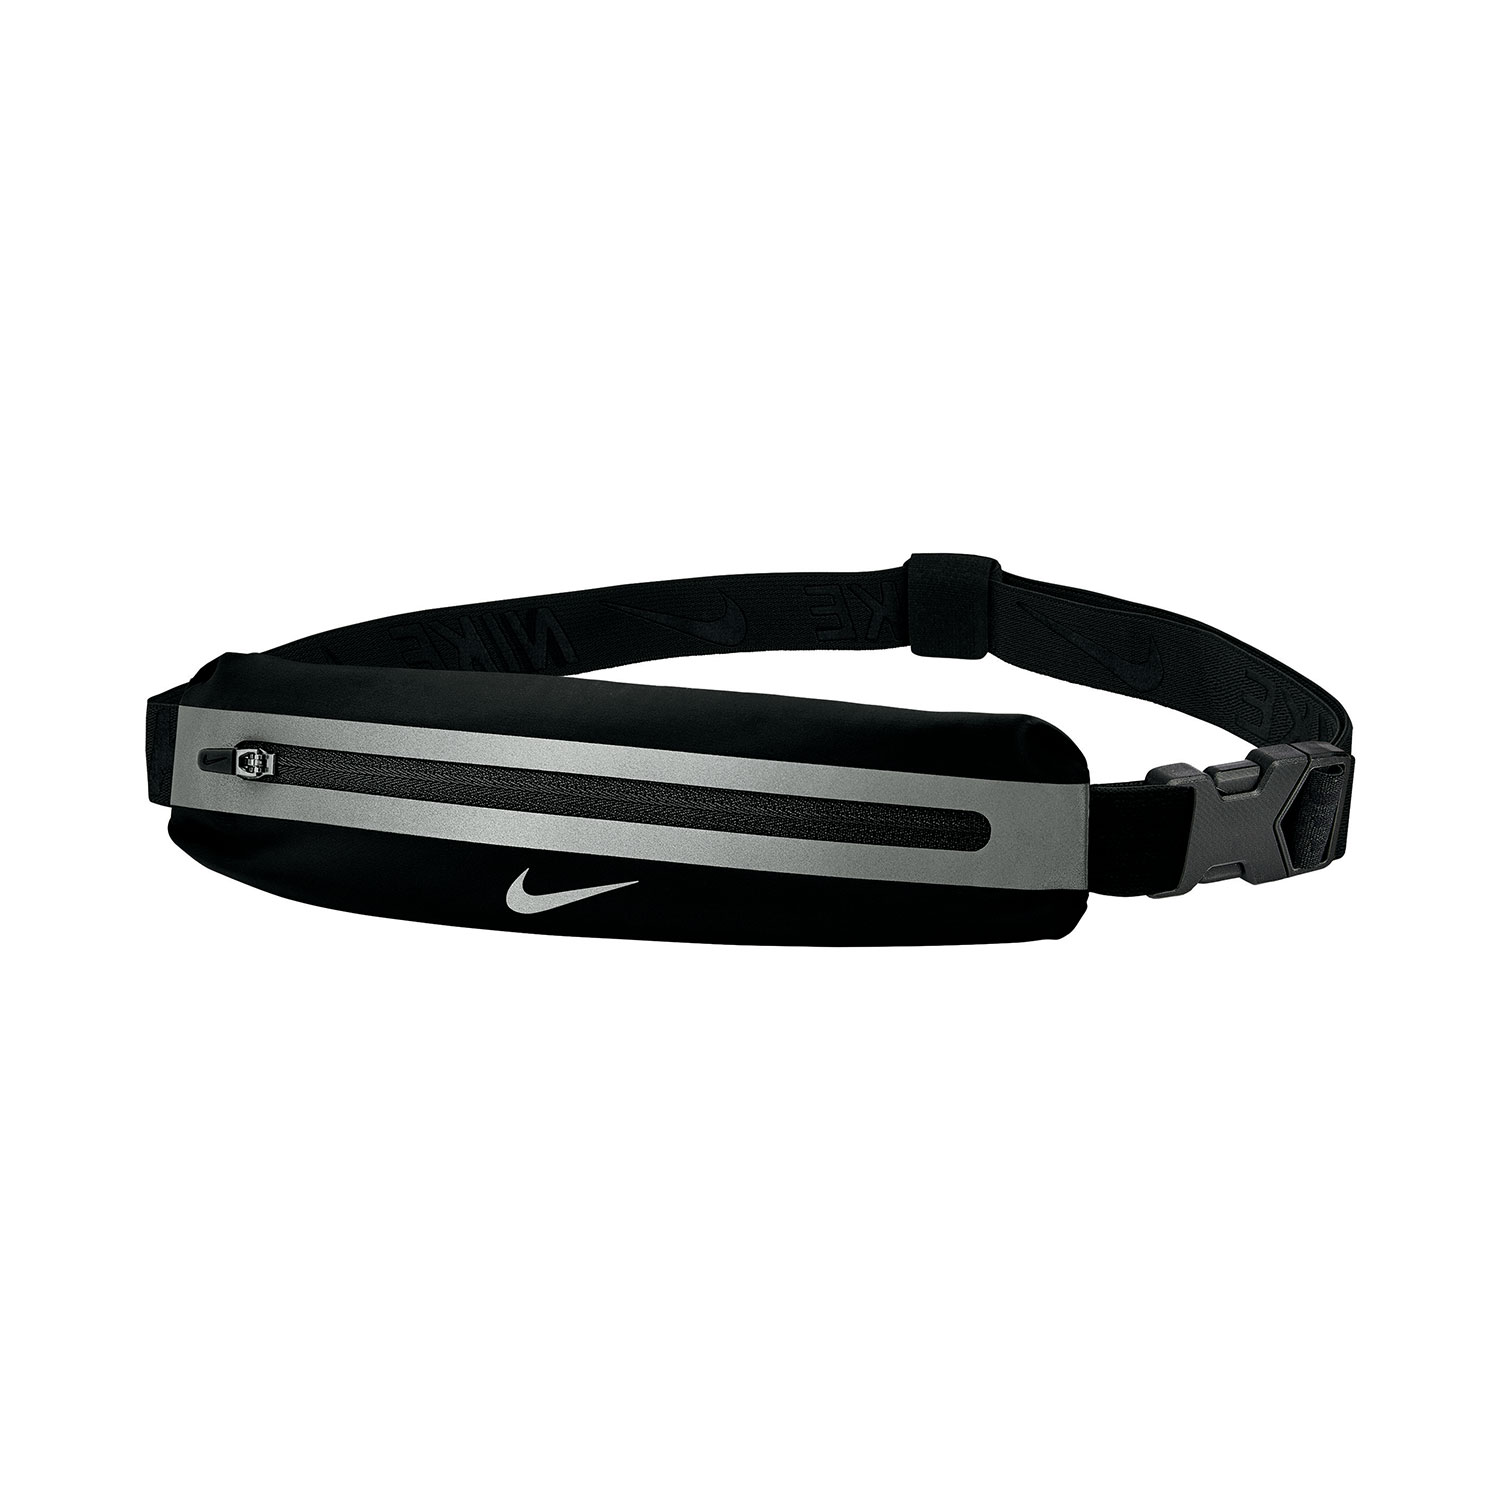 Nike Slim 3.0 Cintura Porta Oggetti - Black/Silver